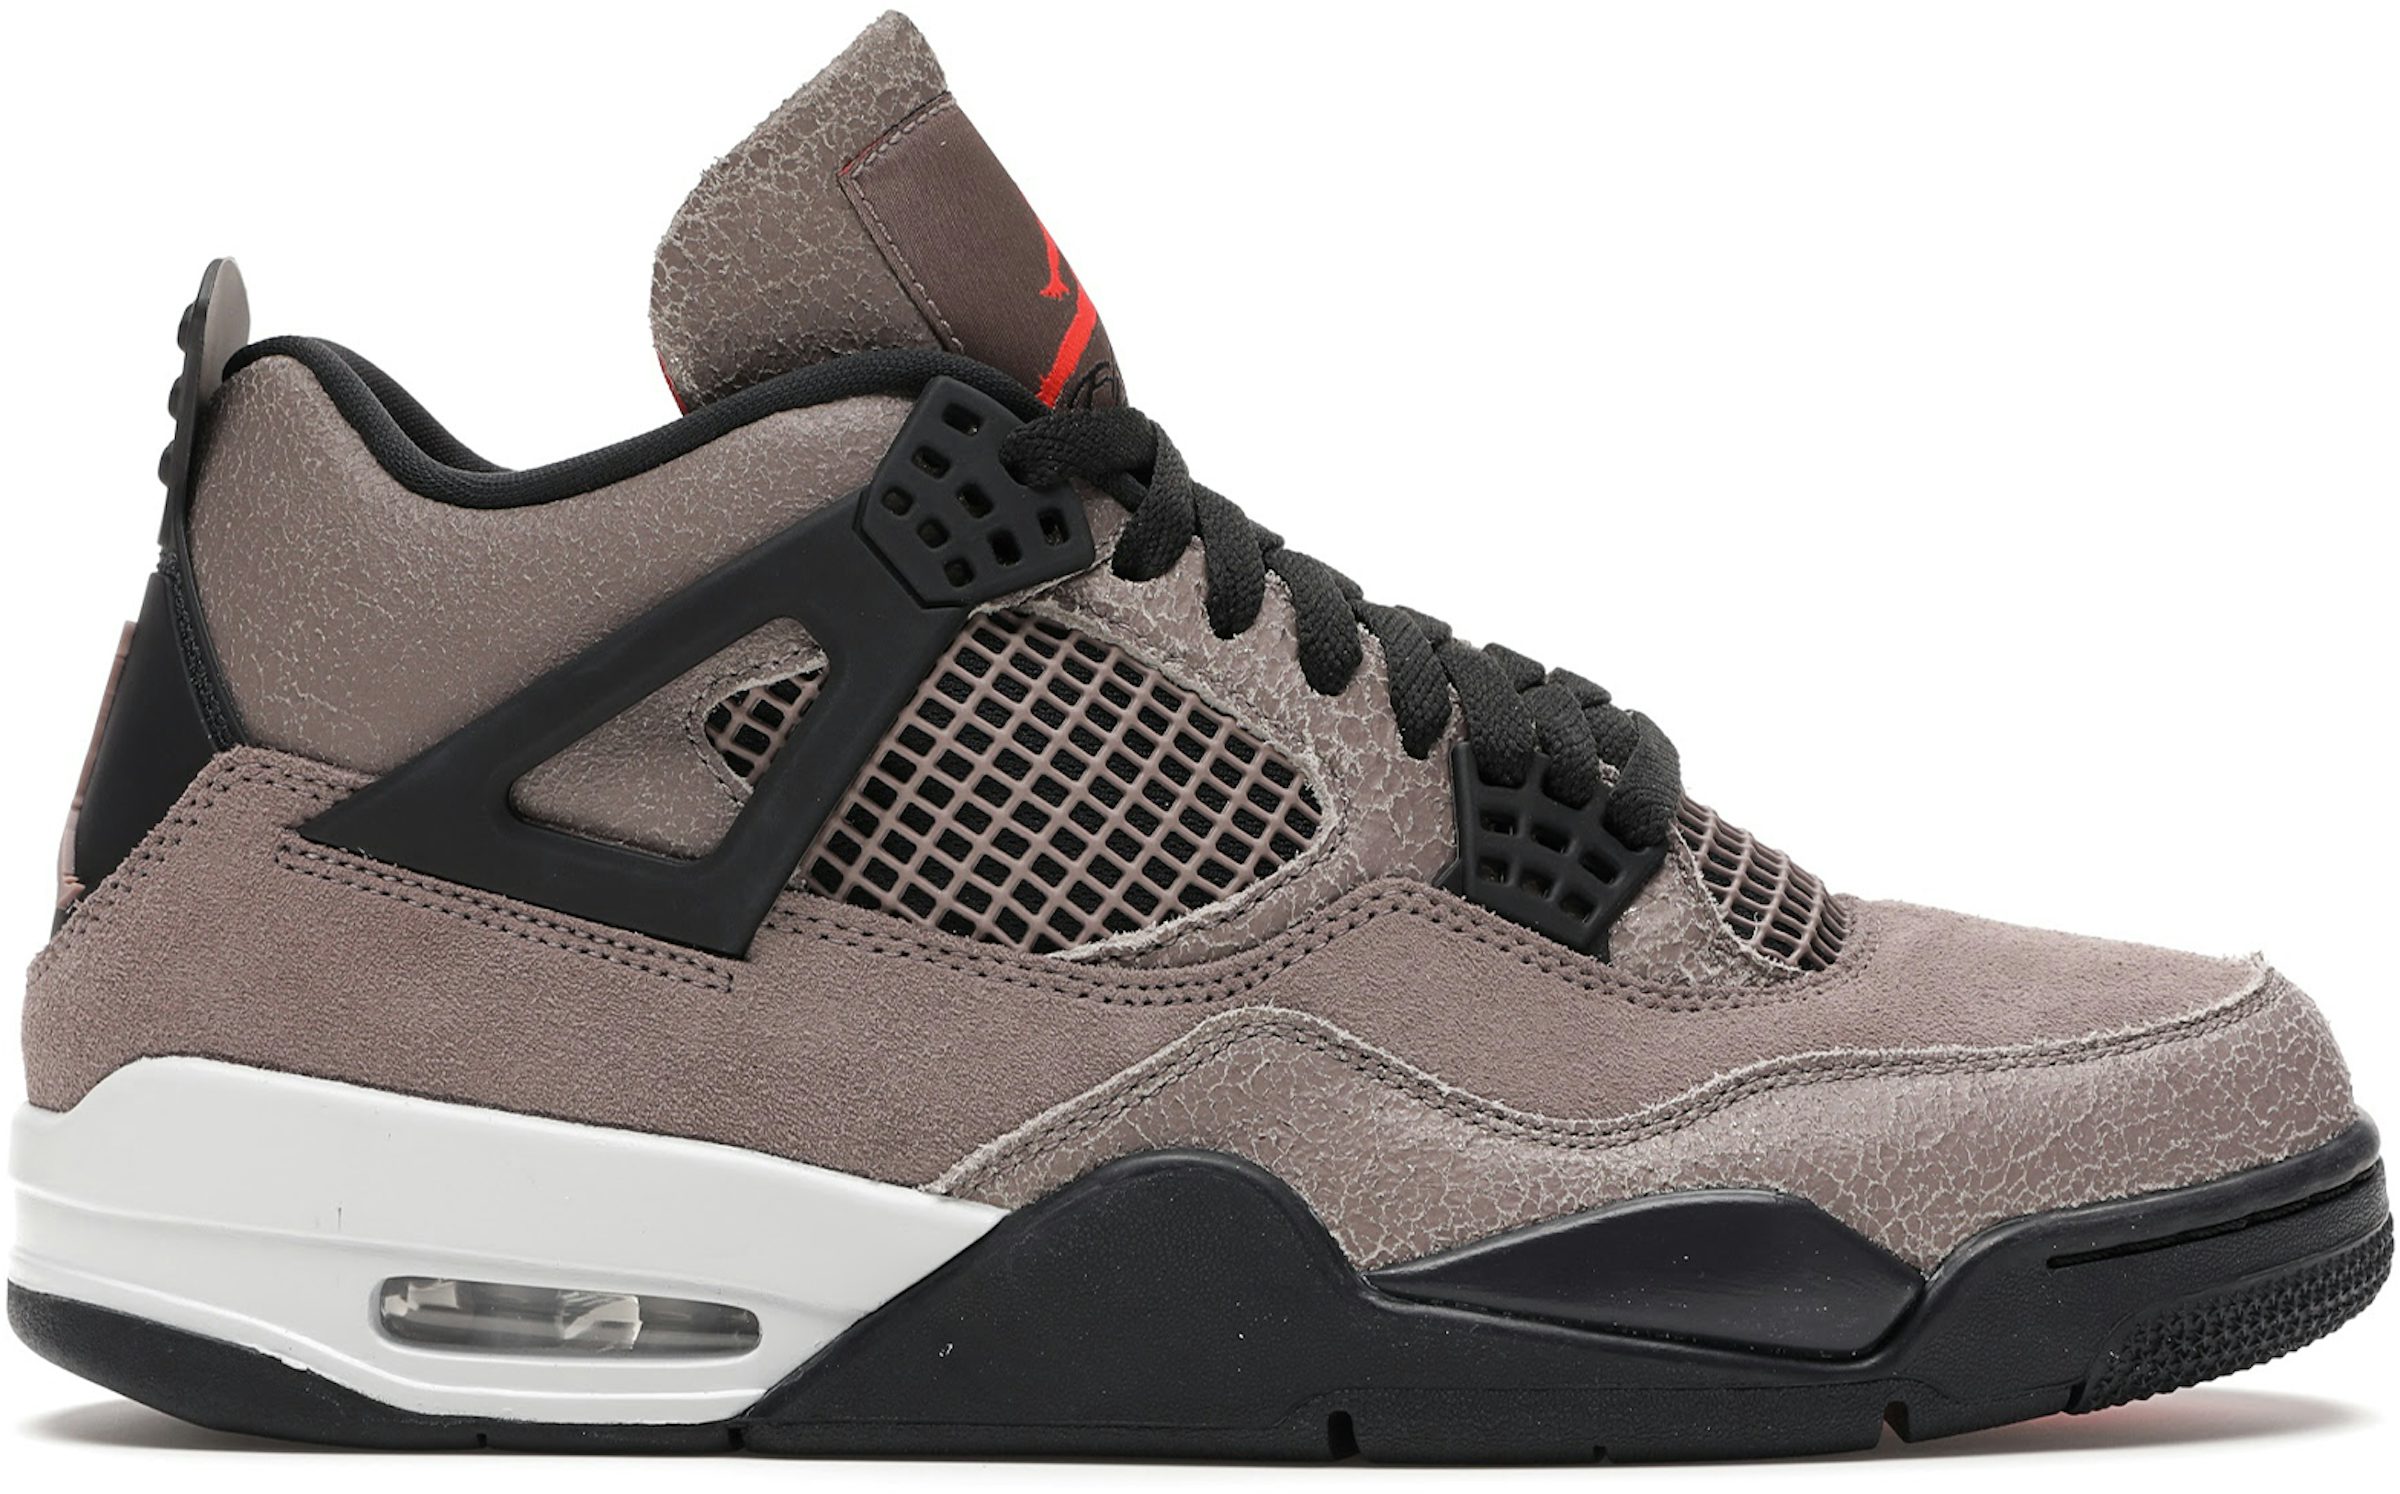 Buy Air Jordan 4 Shoes & New Sneakers - StockX